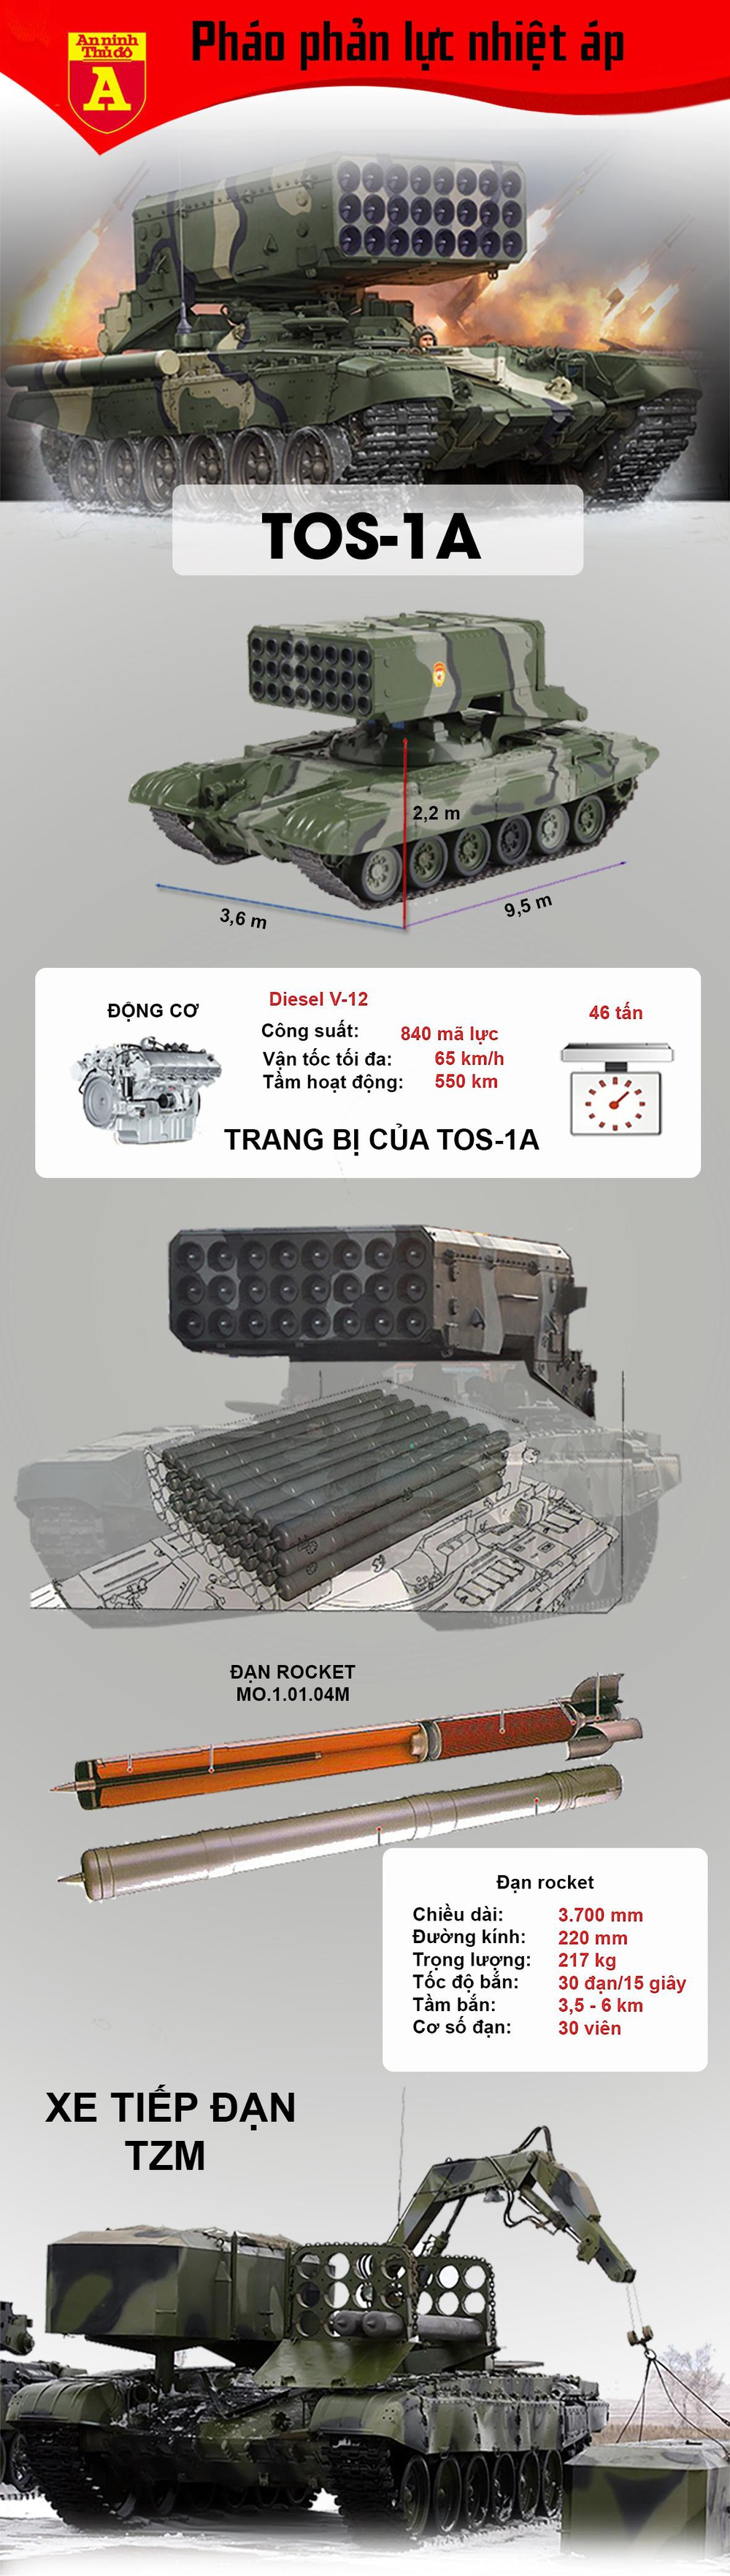 "Hỏa thần nhiệt áp" TOS-1A của quân đội Nga - Ảnh 1